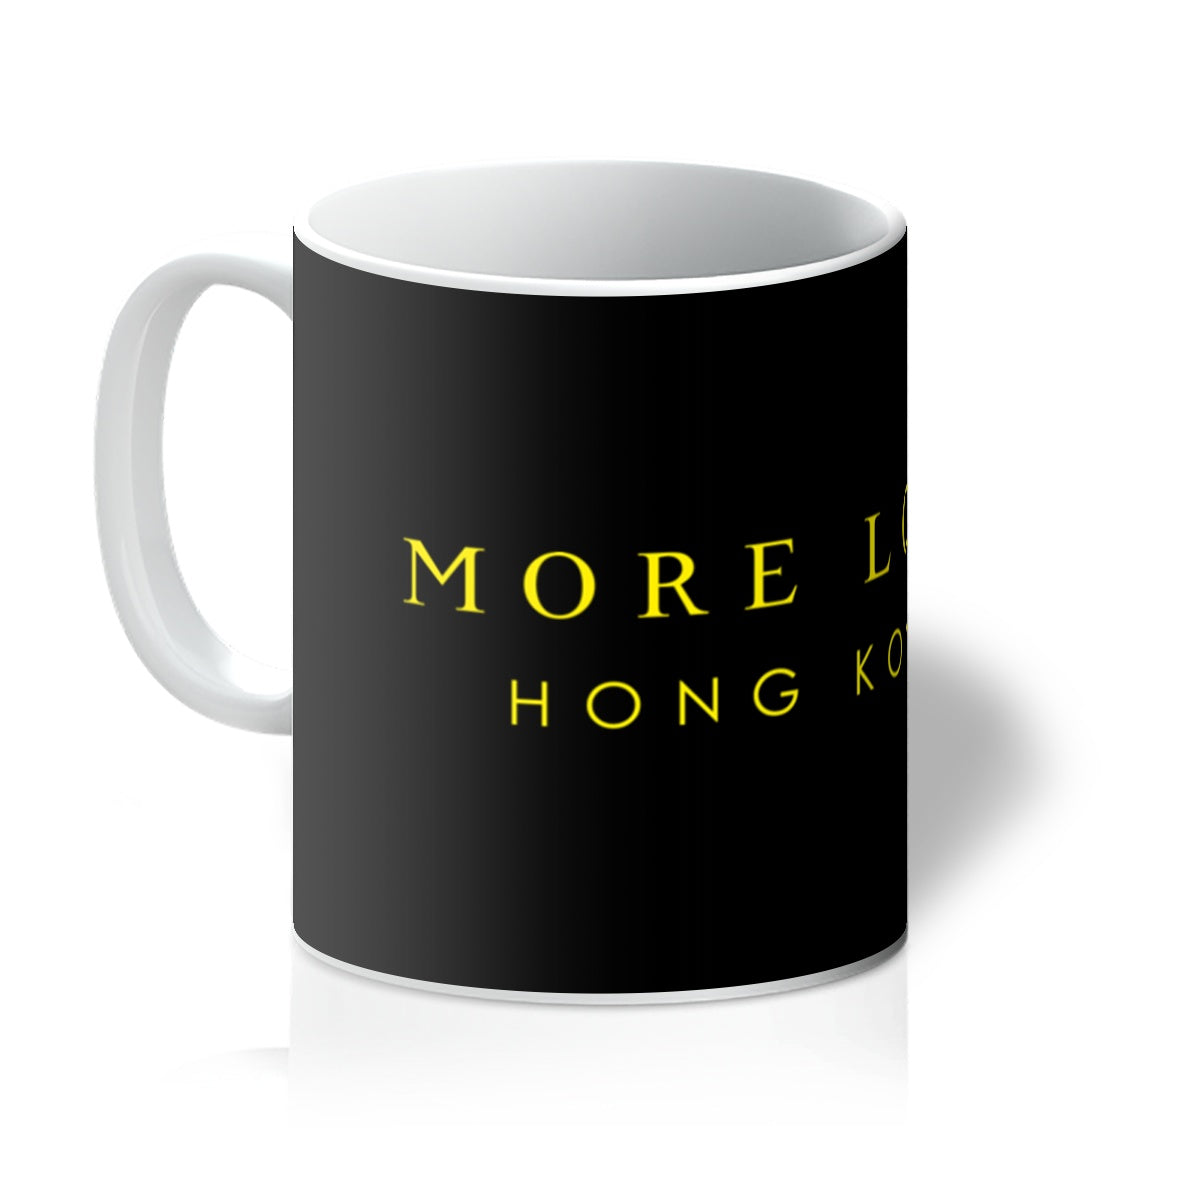 More Lord Hong Kong  Mug